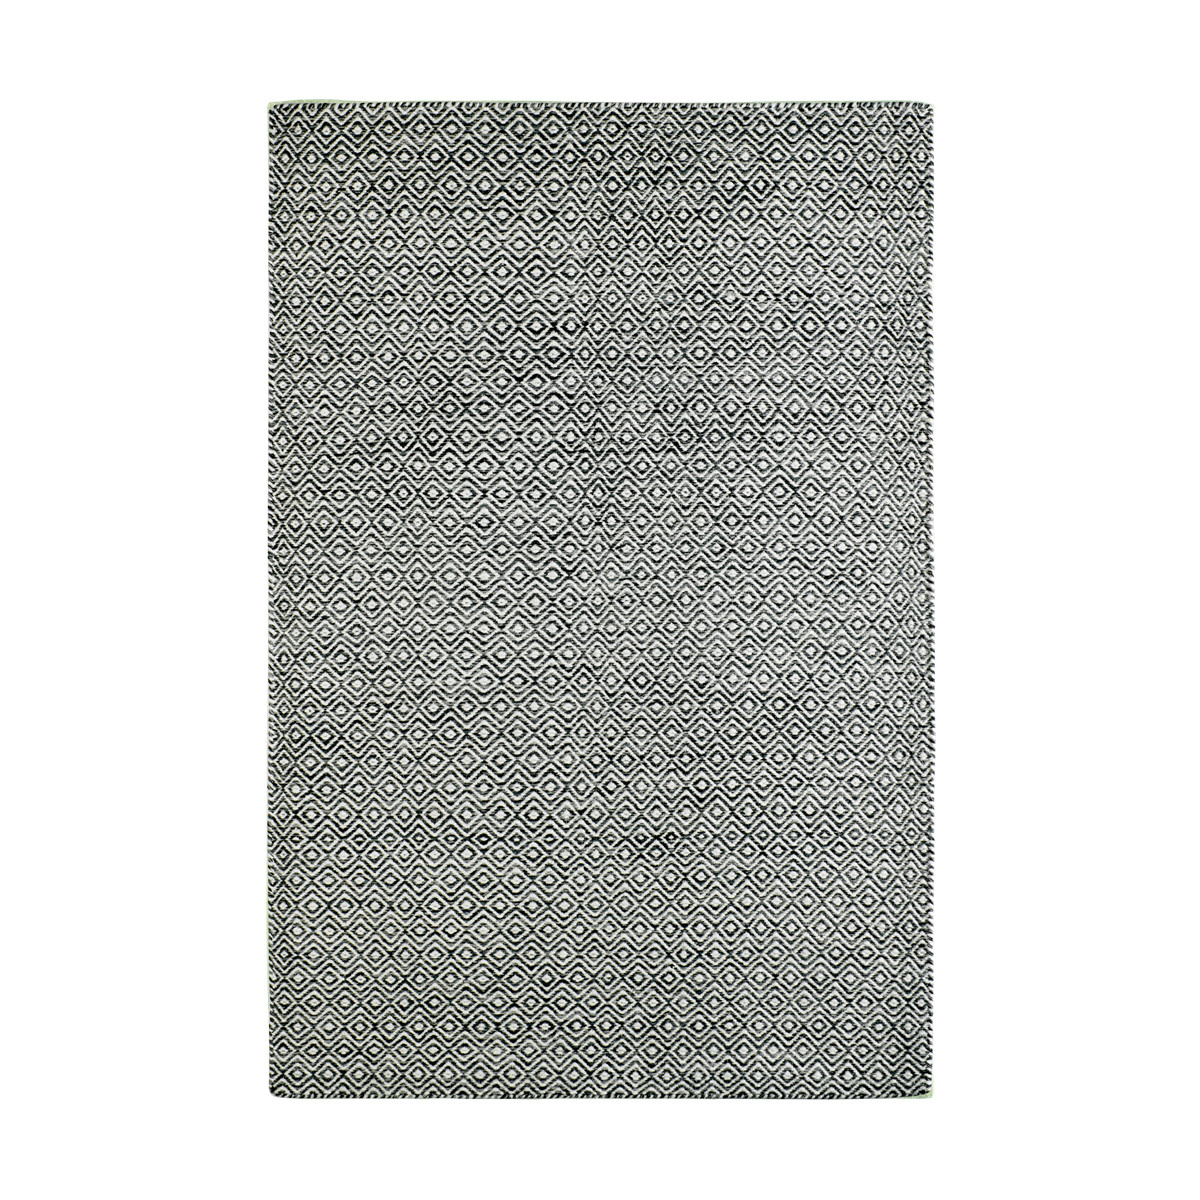 AKCE: 160x230 cm Ručně tkaný kusový koberec Jaipur 334 GRAPHITE